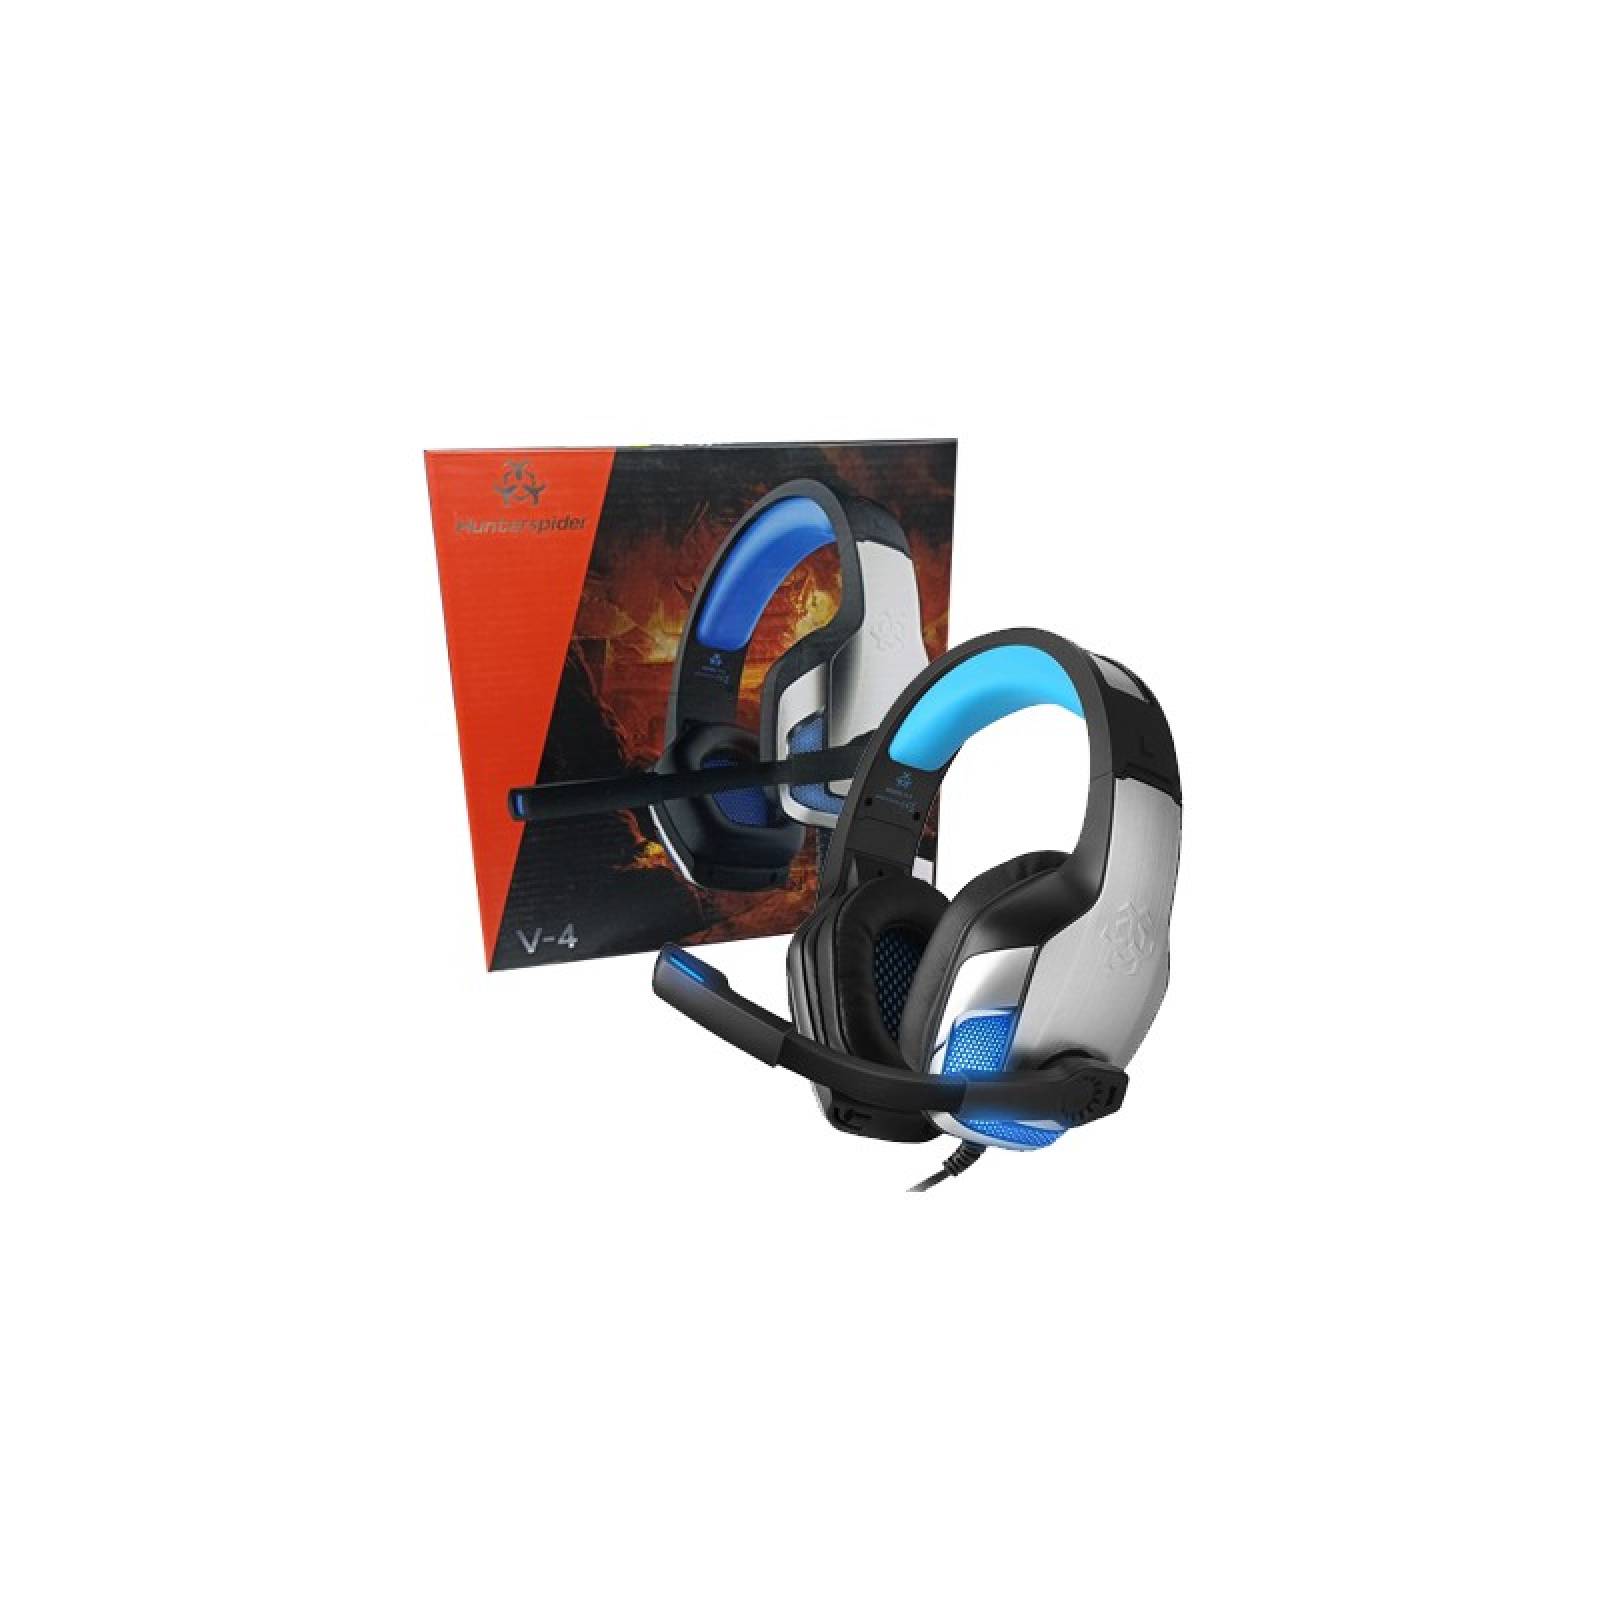 Auriculares Gamer Bengoo V-4 Luz Led Xbox Ps4 Pc Micrófono